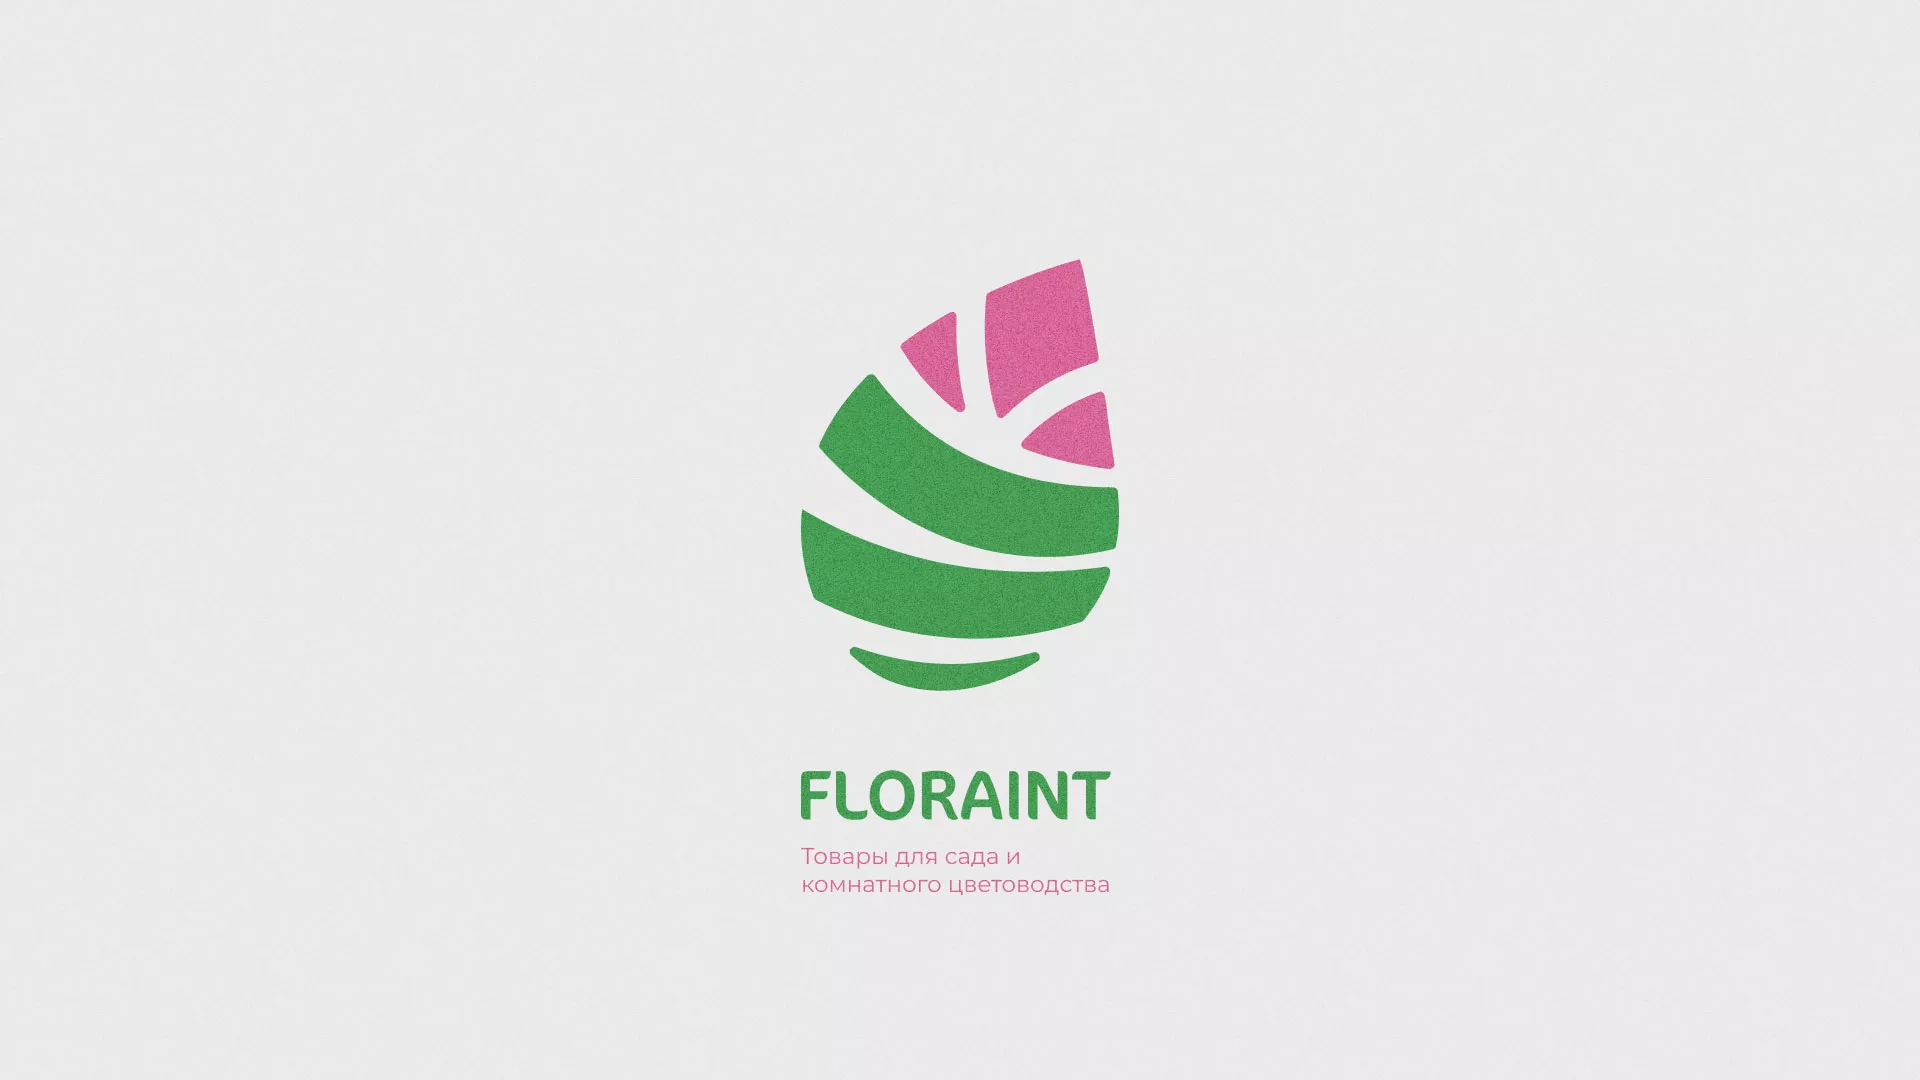 Разработка оформления профиля Instagram для магазина «Floraint» в Казани